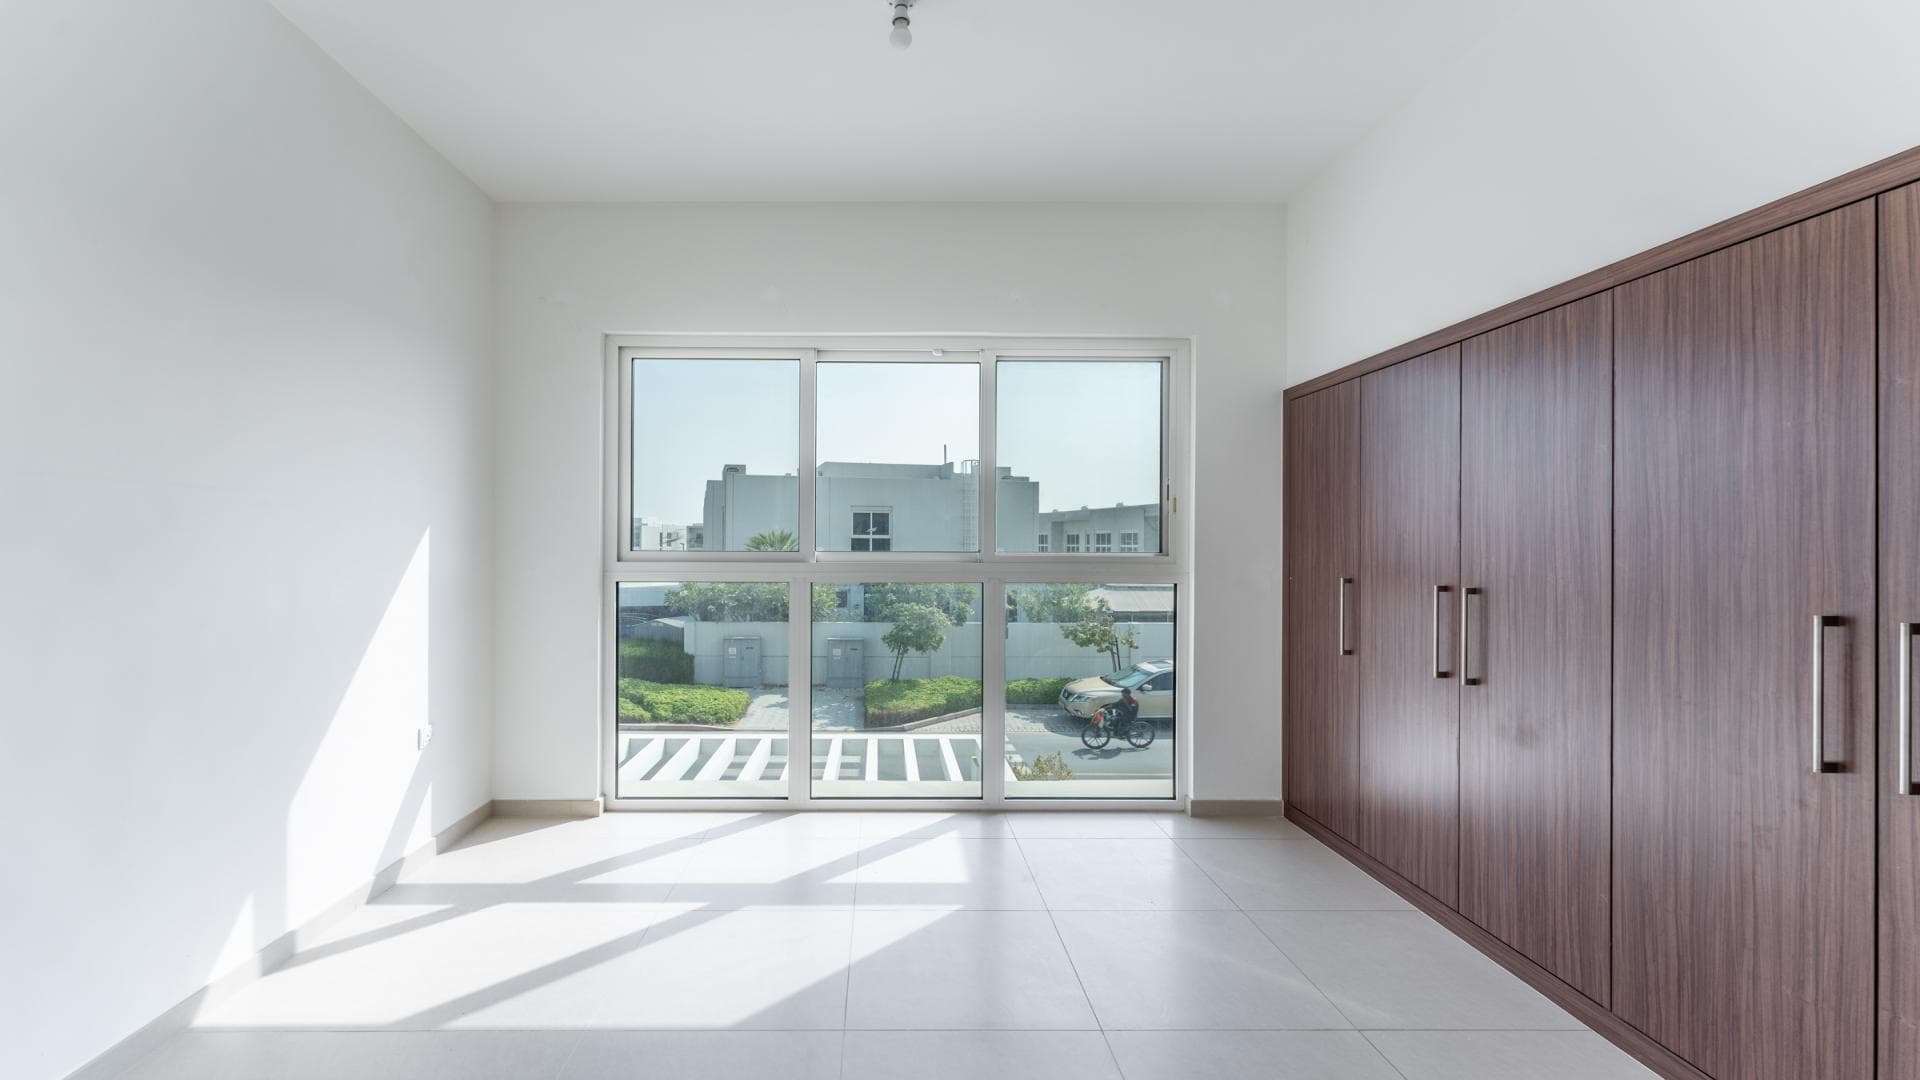 5 Bedroom Villa For Rent Al Kazim Tower 1 Lp17029 2a0ecfcdc1e30600.jpg